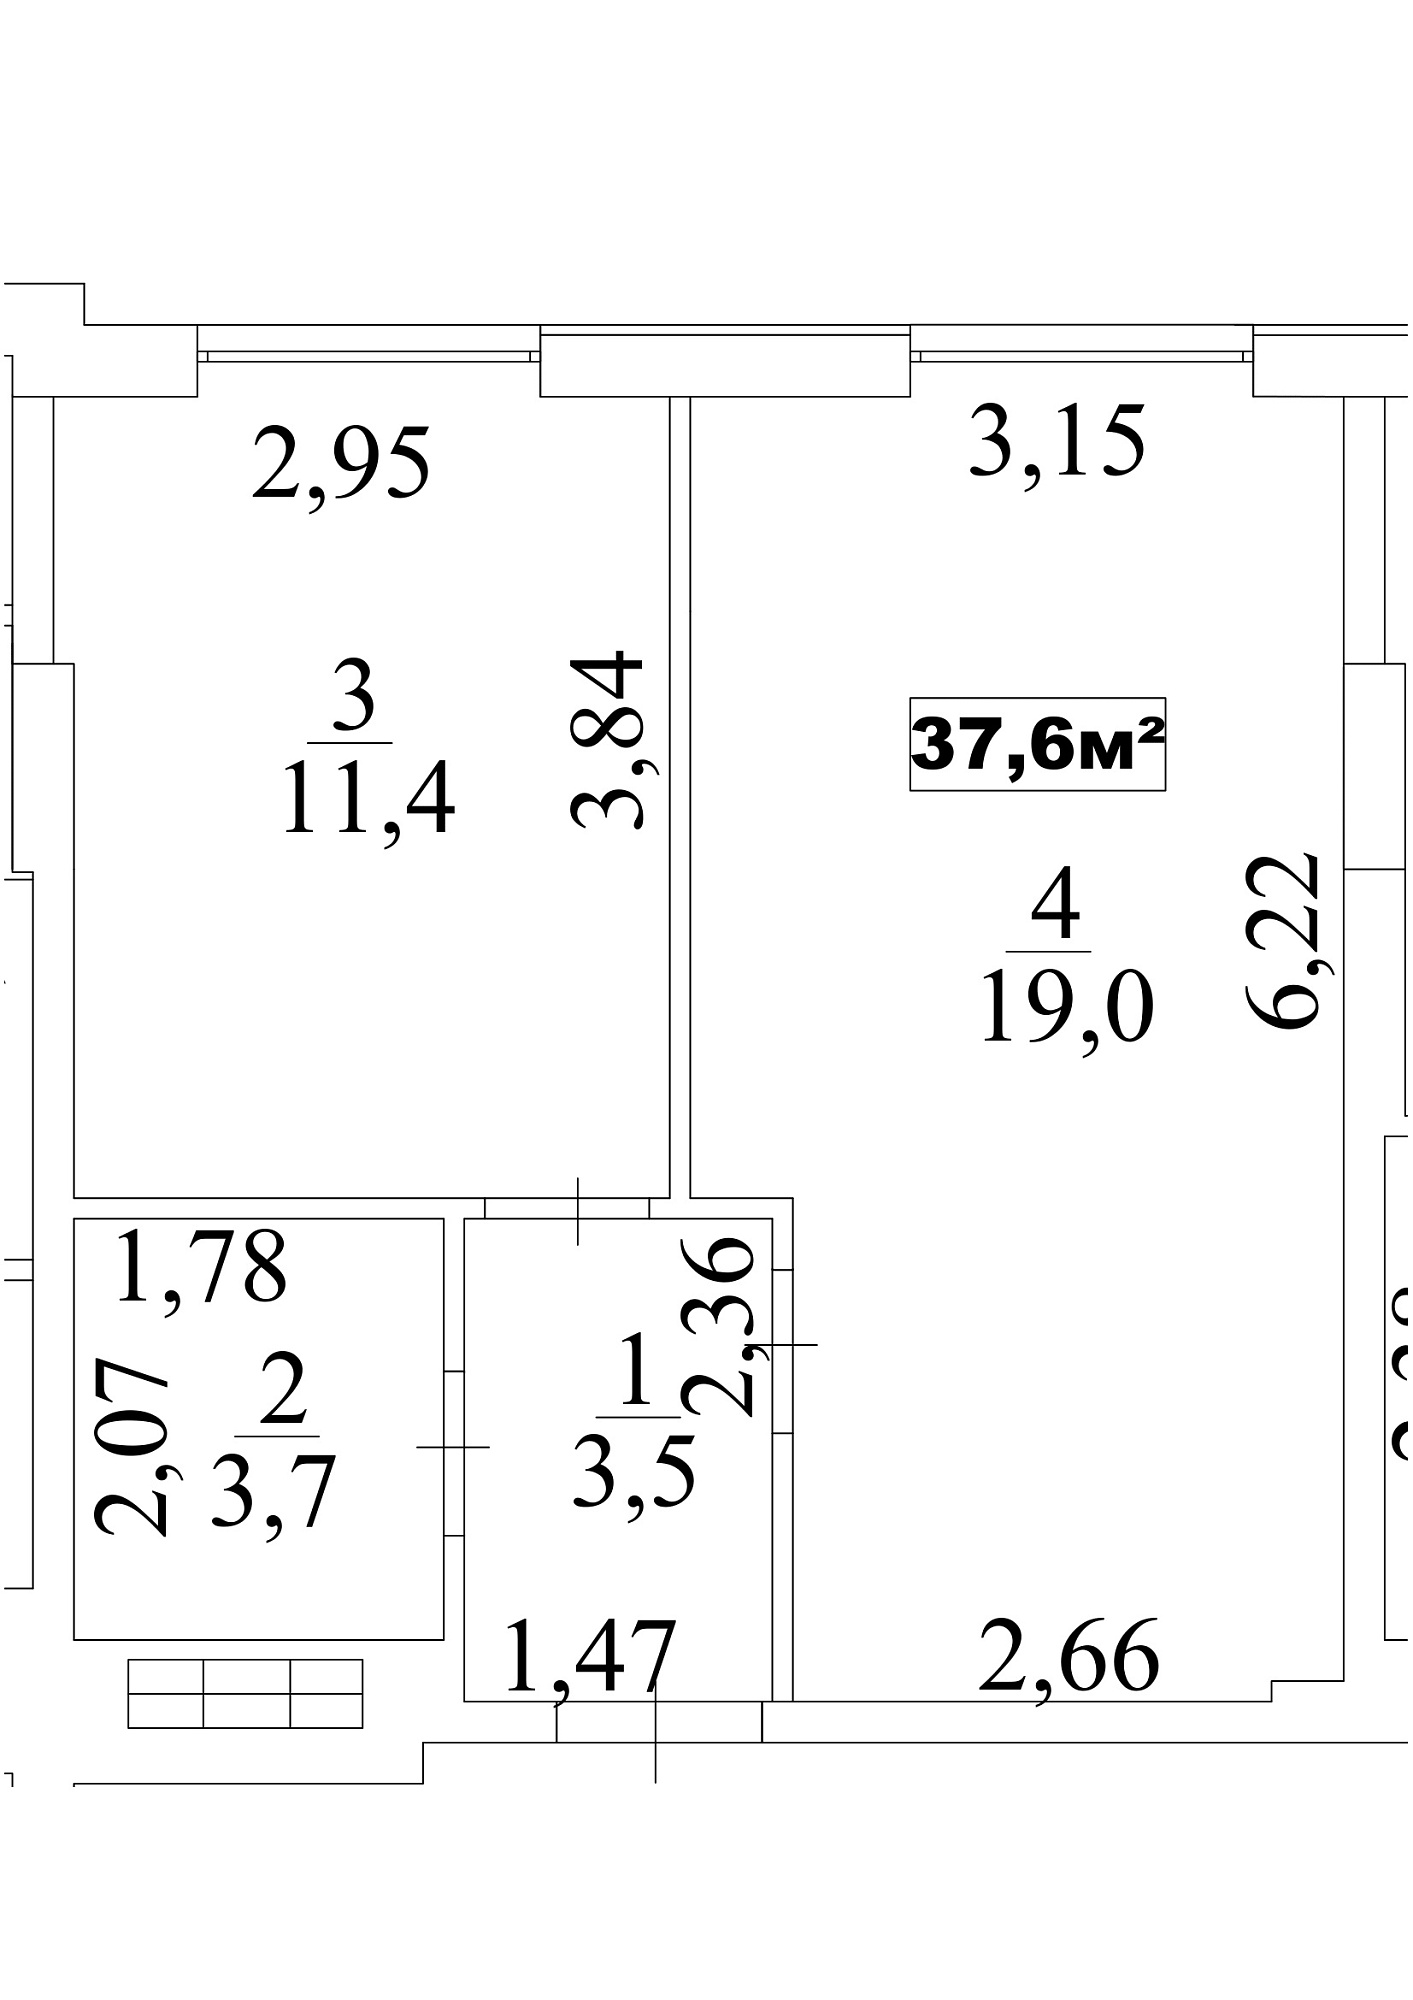 Планировка 1-к квартира площей 37.6м2, AB-10-05/00042.